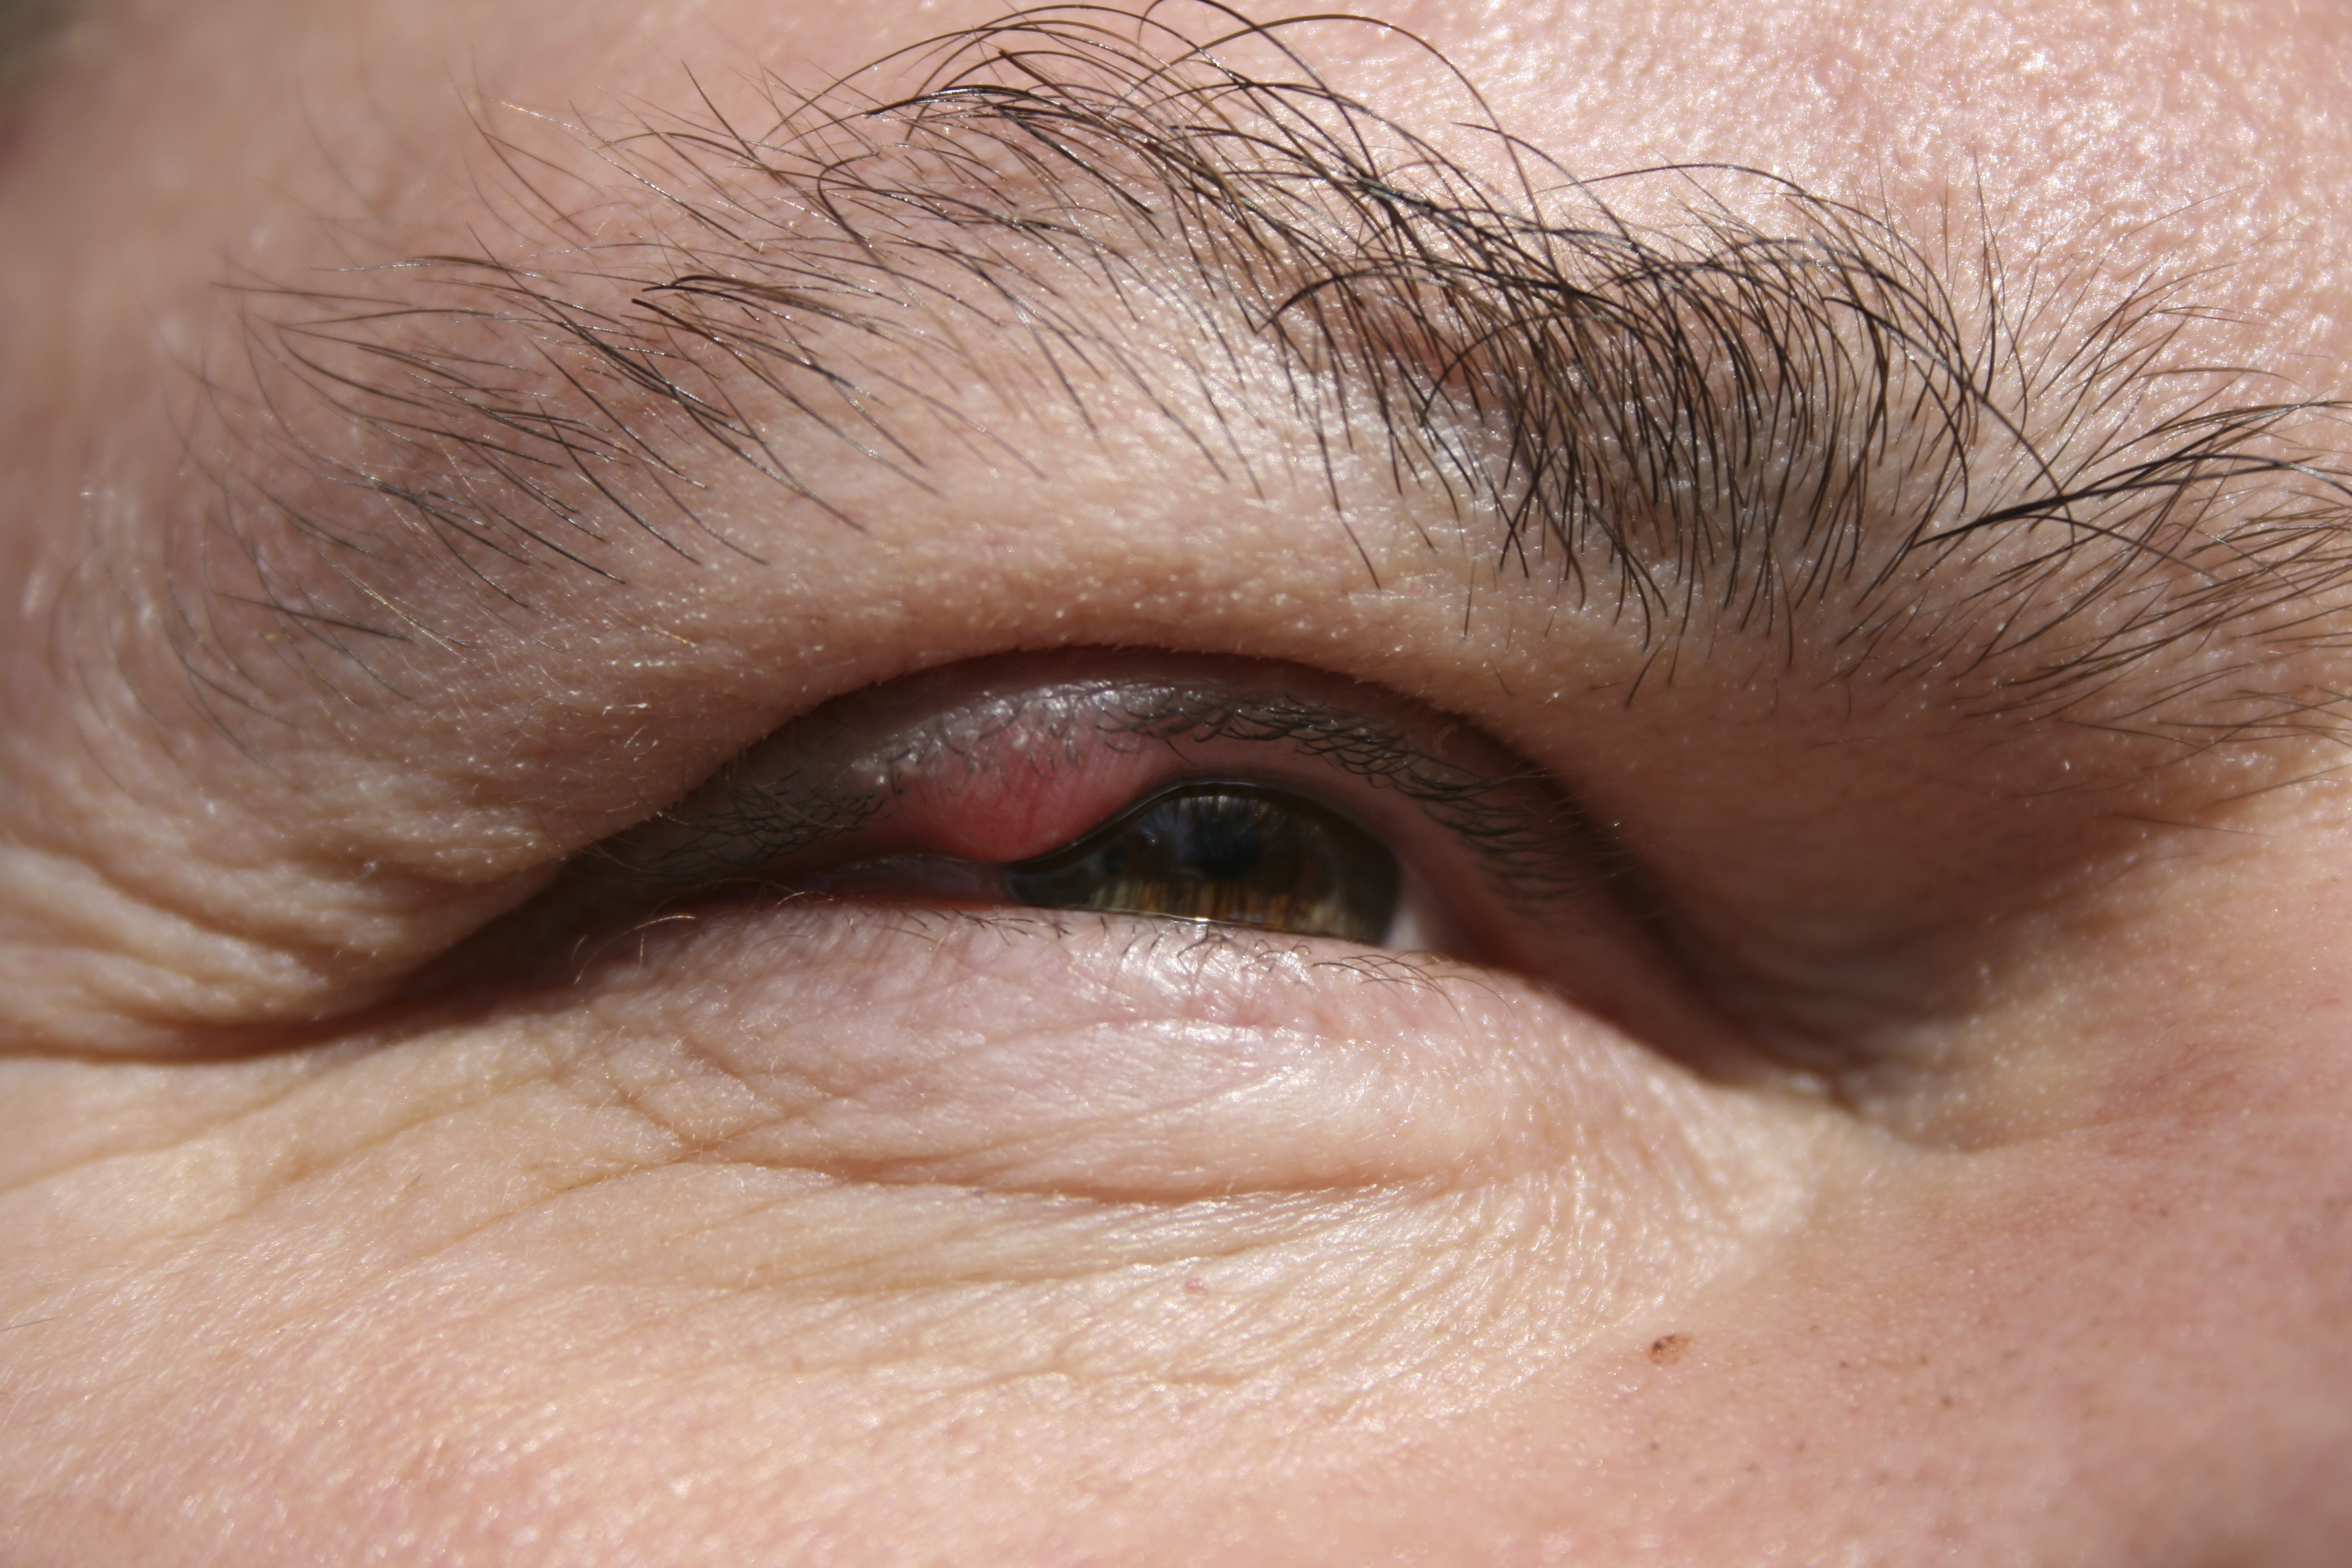 Un homme découvre qu'il a une écharde dans l'oeil depuis 15 ans